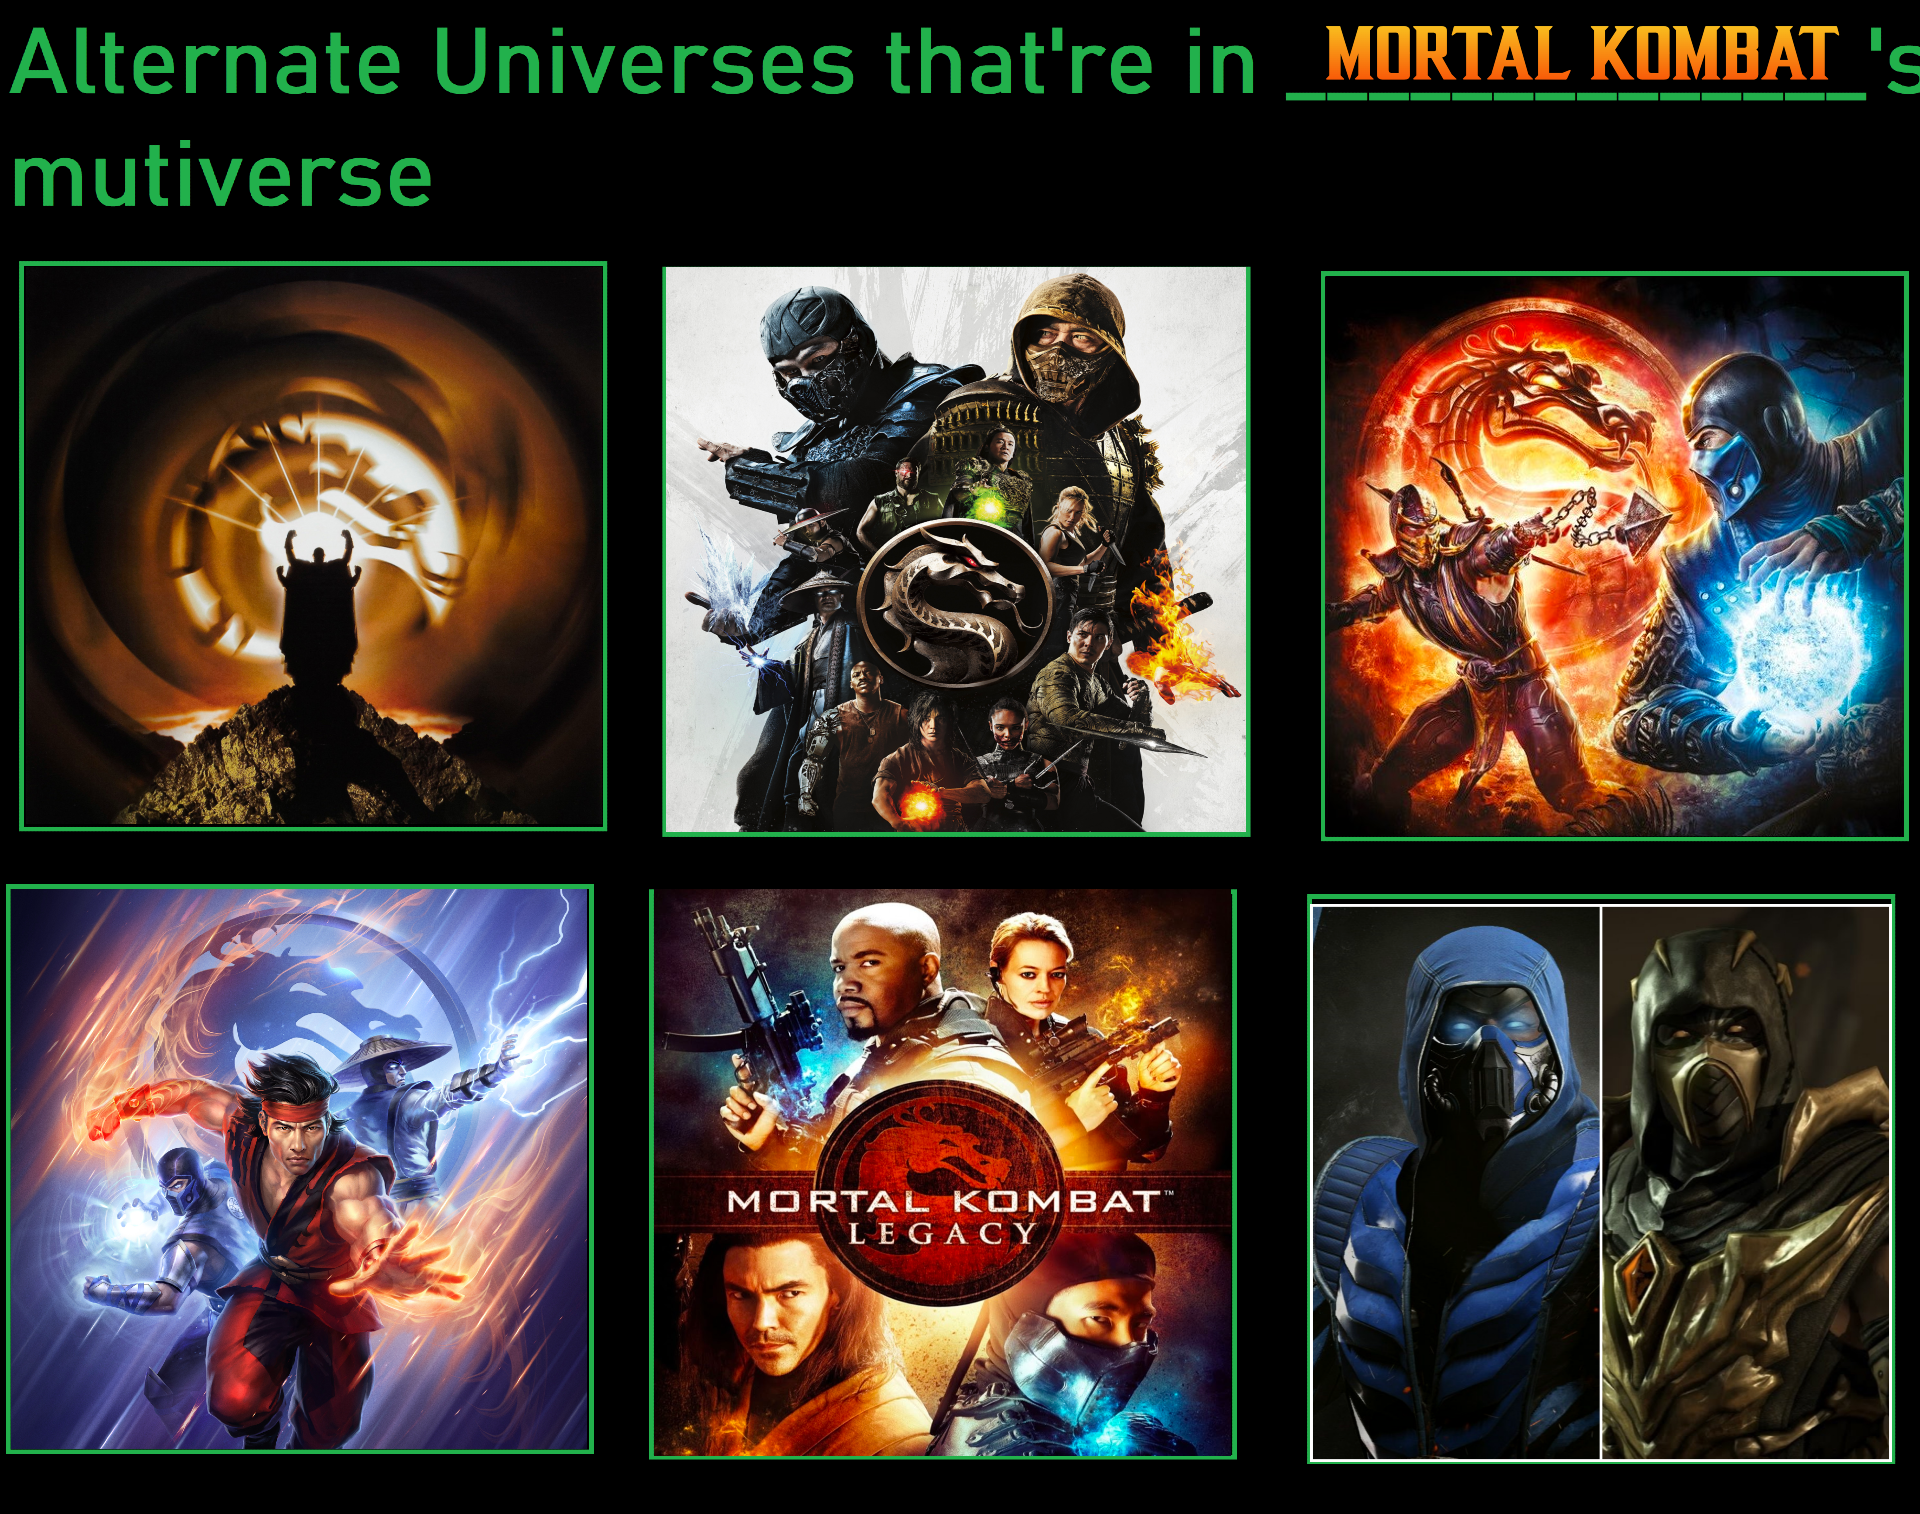 Mortal Kombat vs. Street Fighter by RyuKangLivesAgain on DeviantArt